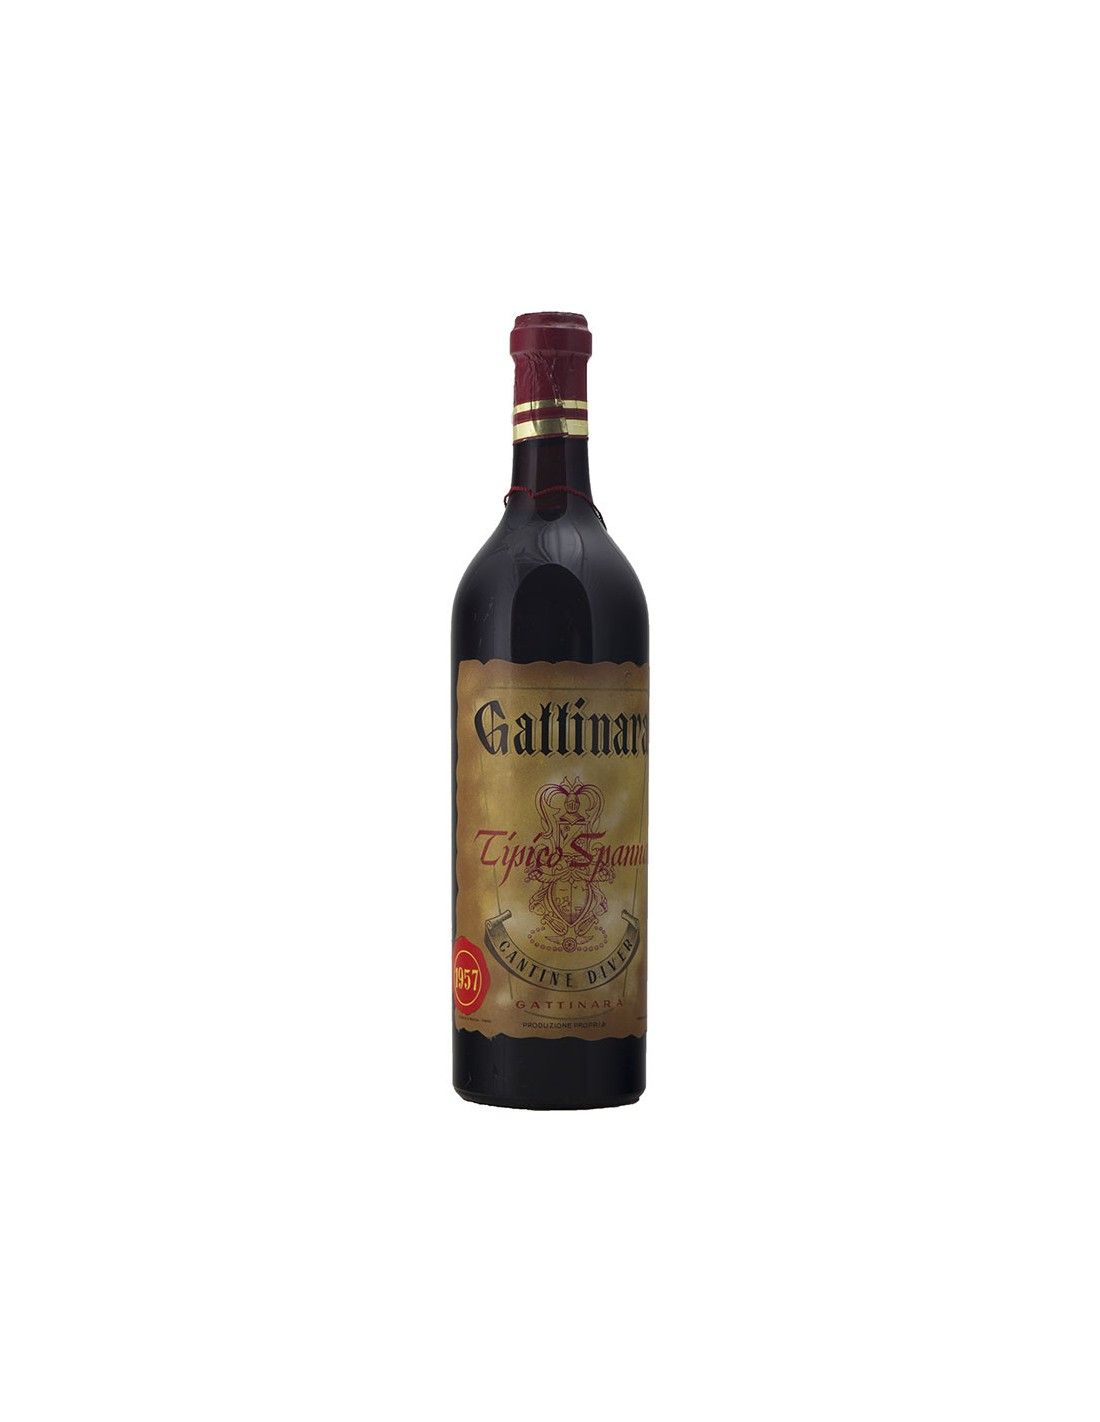 GATTINARA TIPICO SPANNA 1957 CANTINE DIVER Grandi Bottiglie